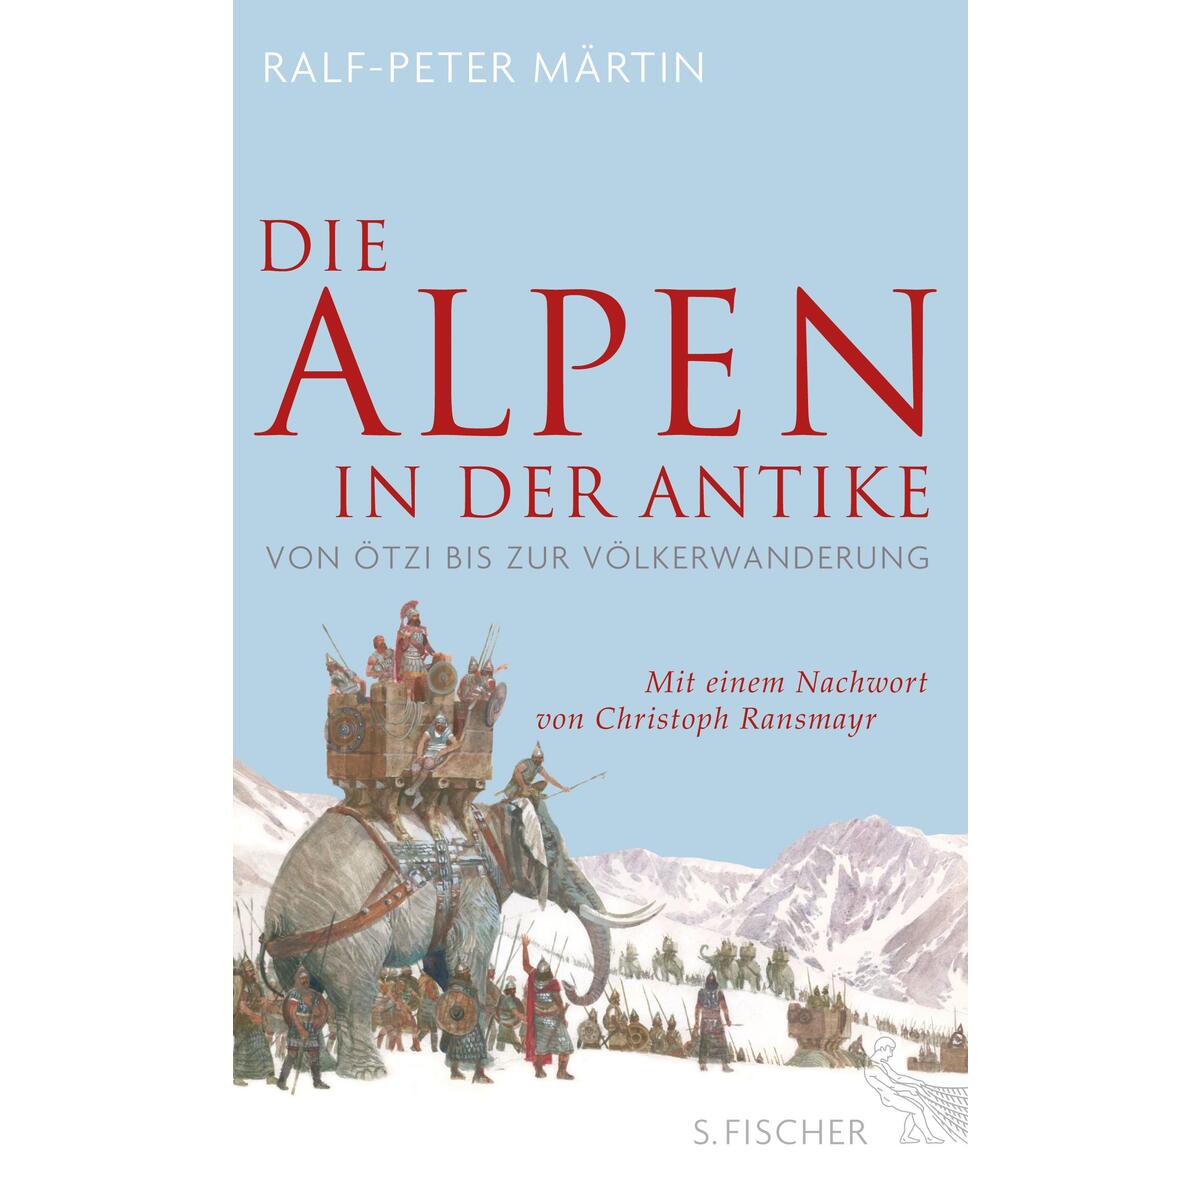 Die Alpen in der Antike von FISCHER, S.